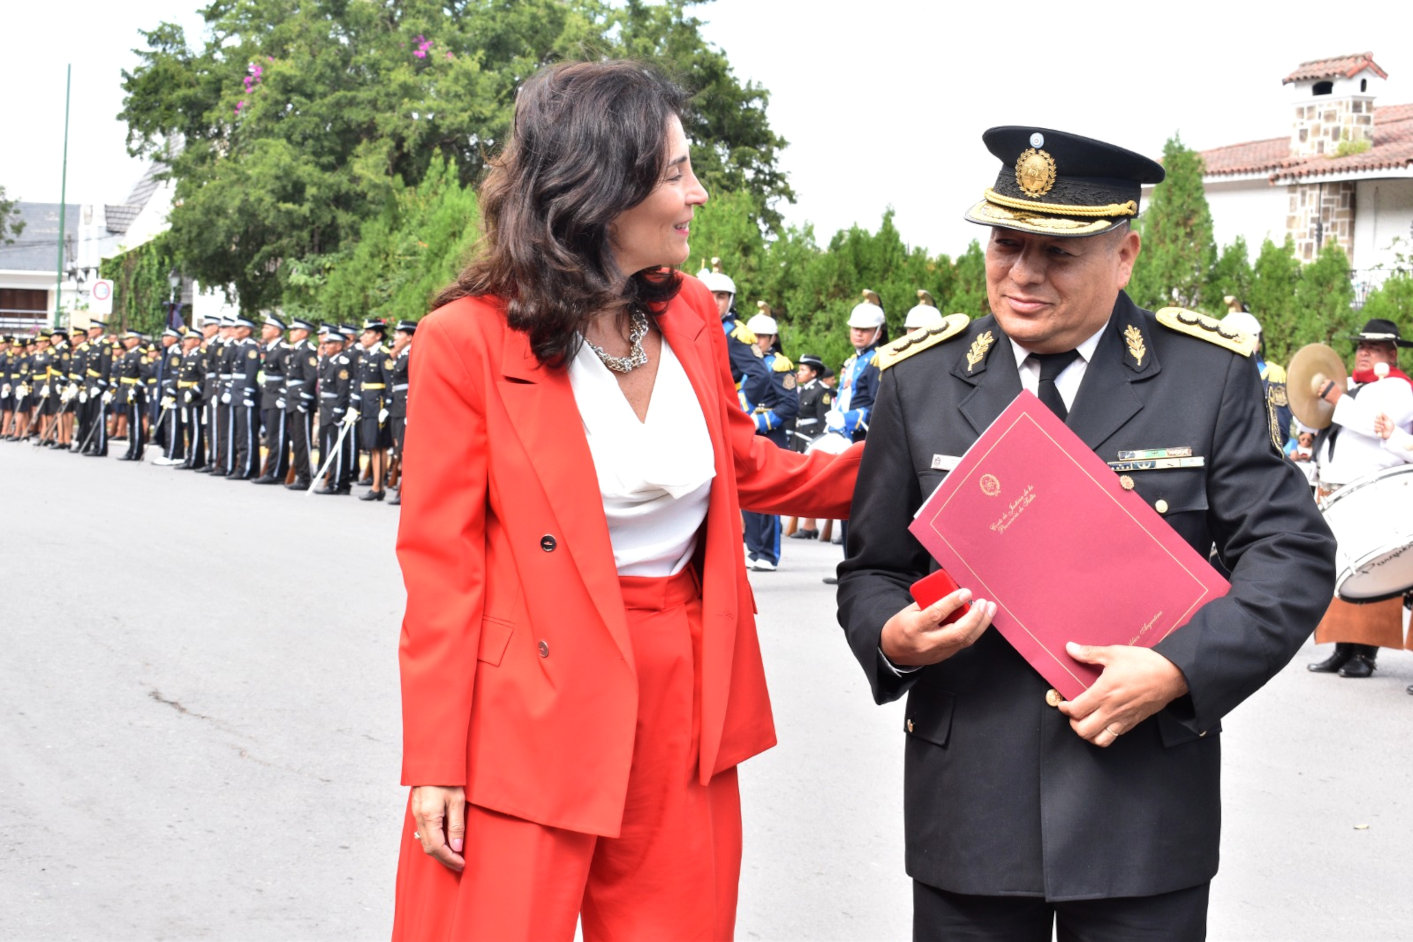 Fotografía: En el día de la Policía entregaron un reconocimiento de la Corte de Justicia a un Comisario General